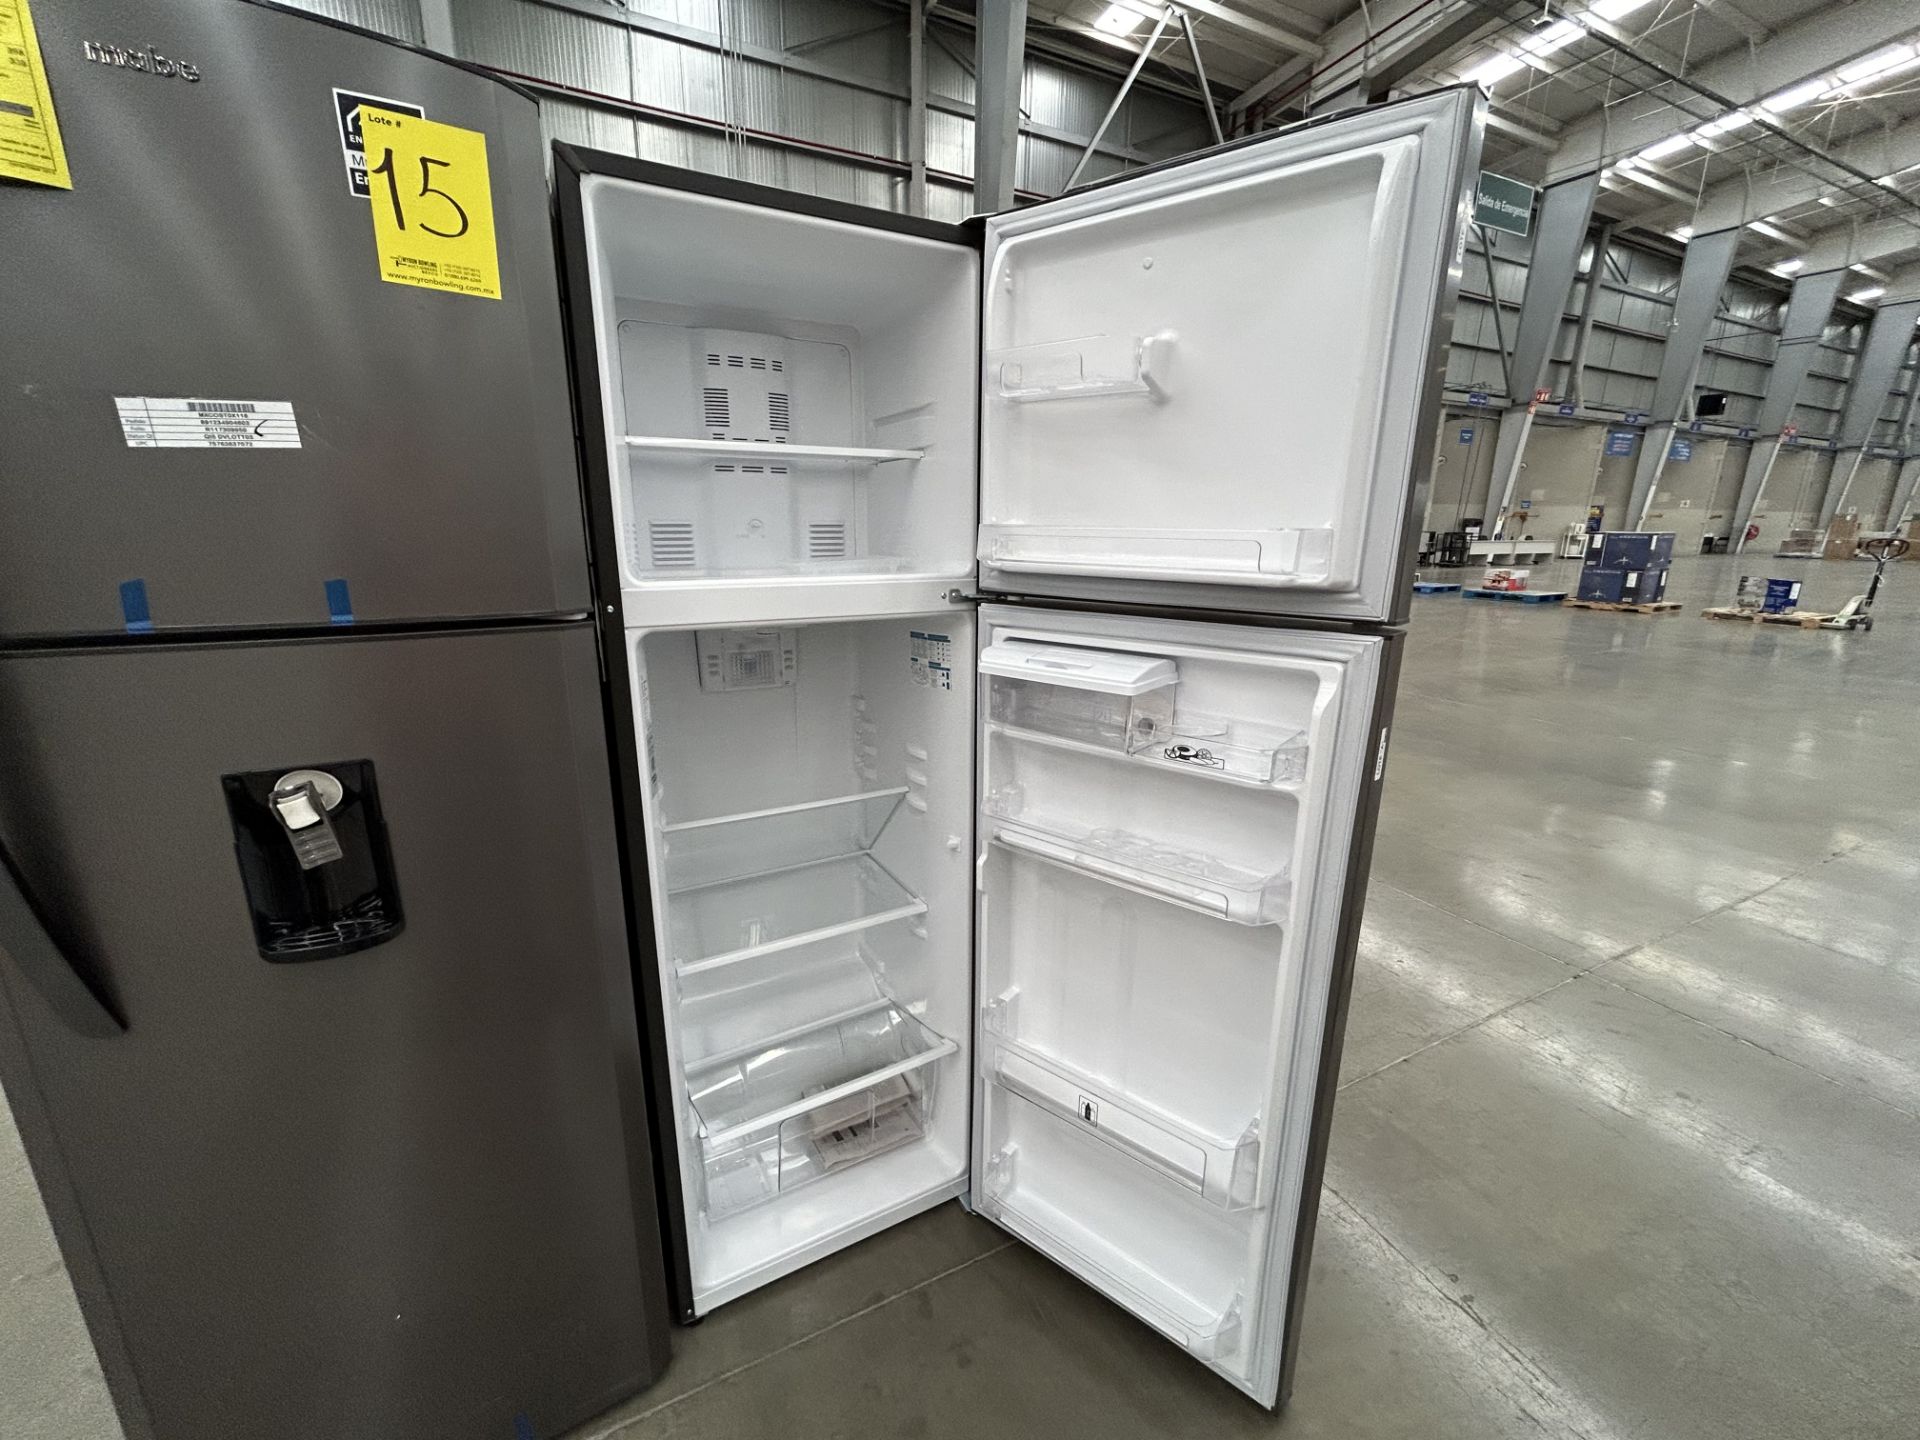 Lote de 2 refrigeradores contiene: 1 refrigerador con dispensador de agua Marca MABE, Modelo RMA300 - Image 4 of 6